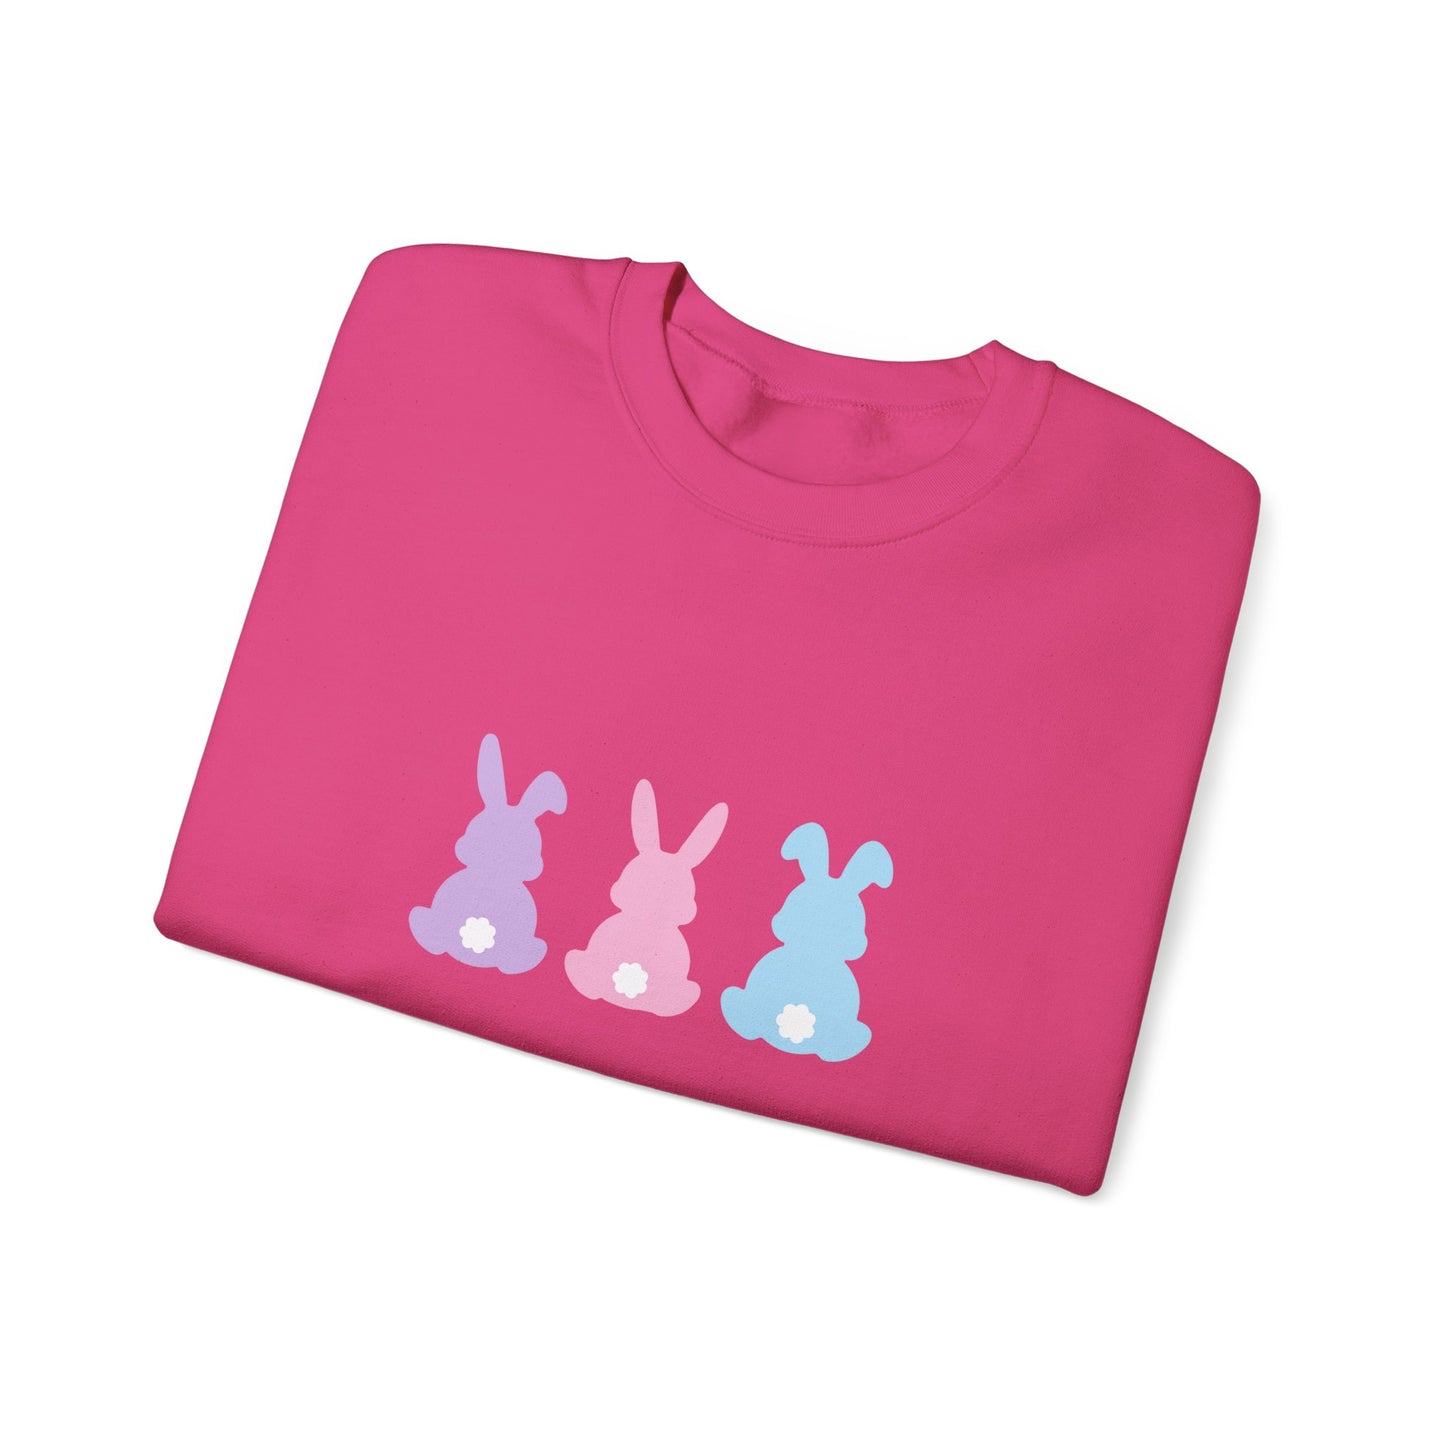 Bunny Pastel Crewneck Sweatshirt